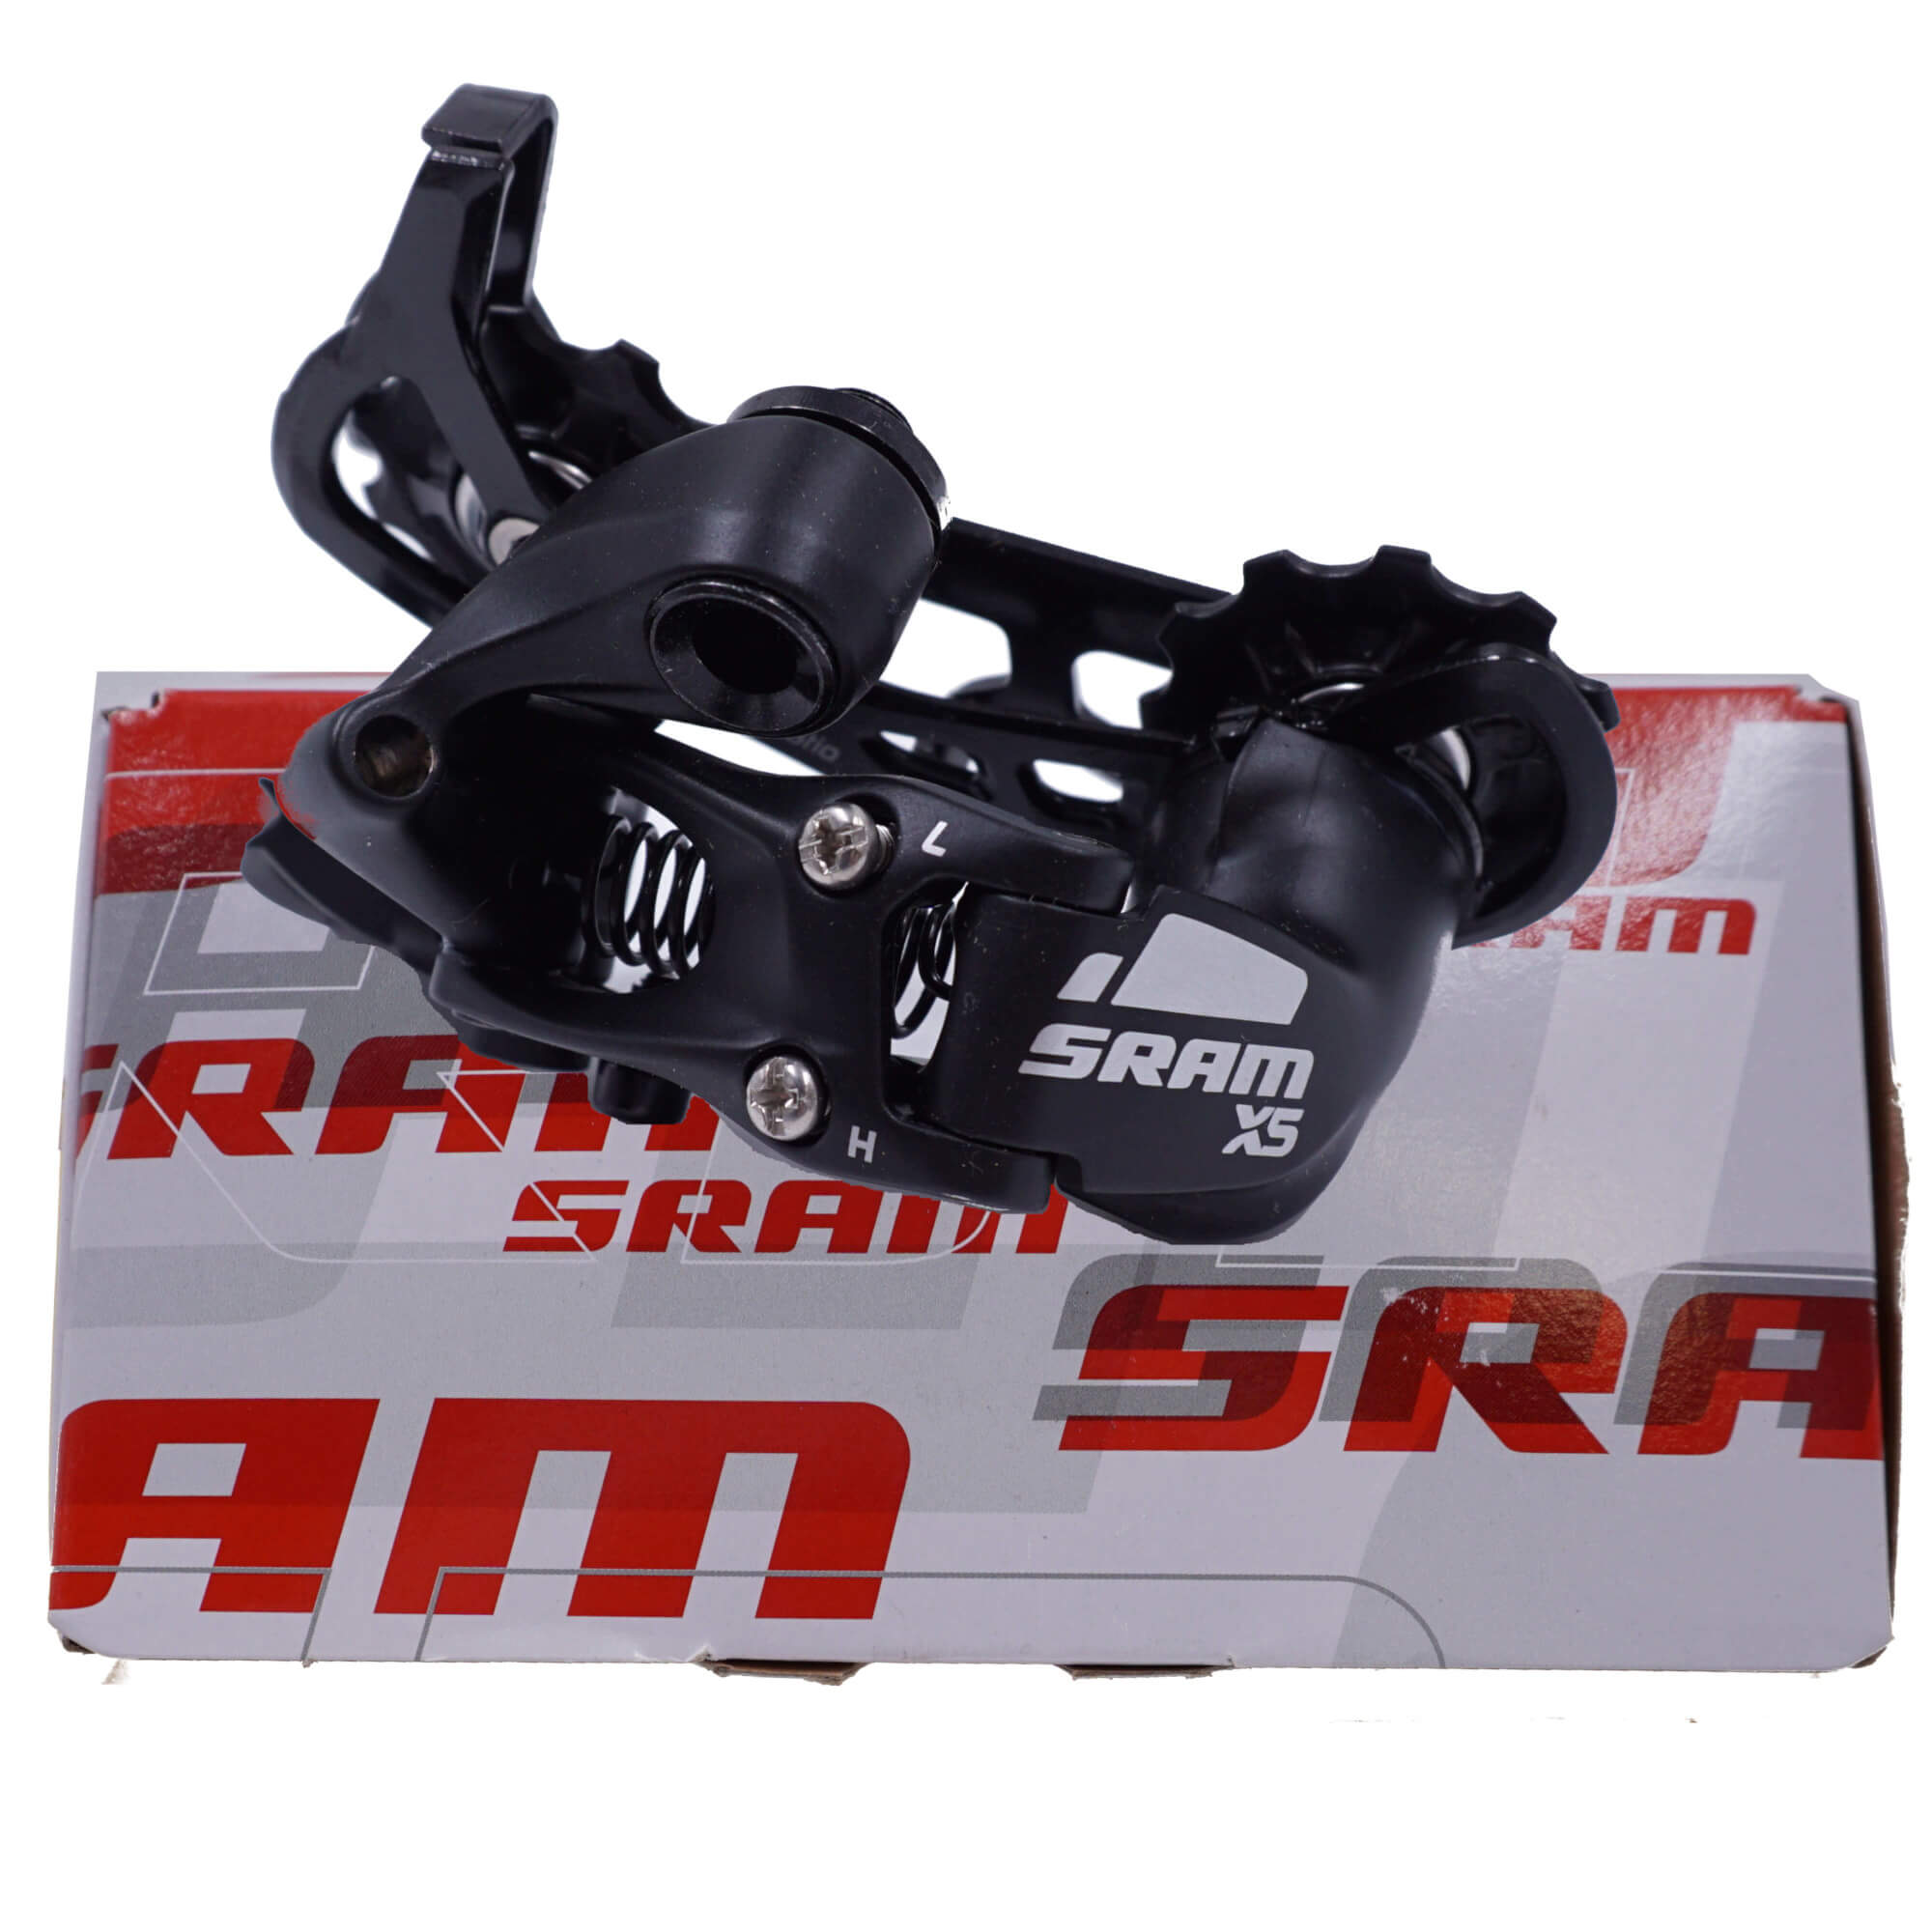 SRAM X5 9 Speed Medium Cage Rear Derailleur